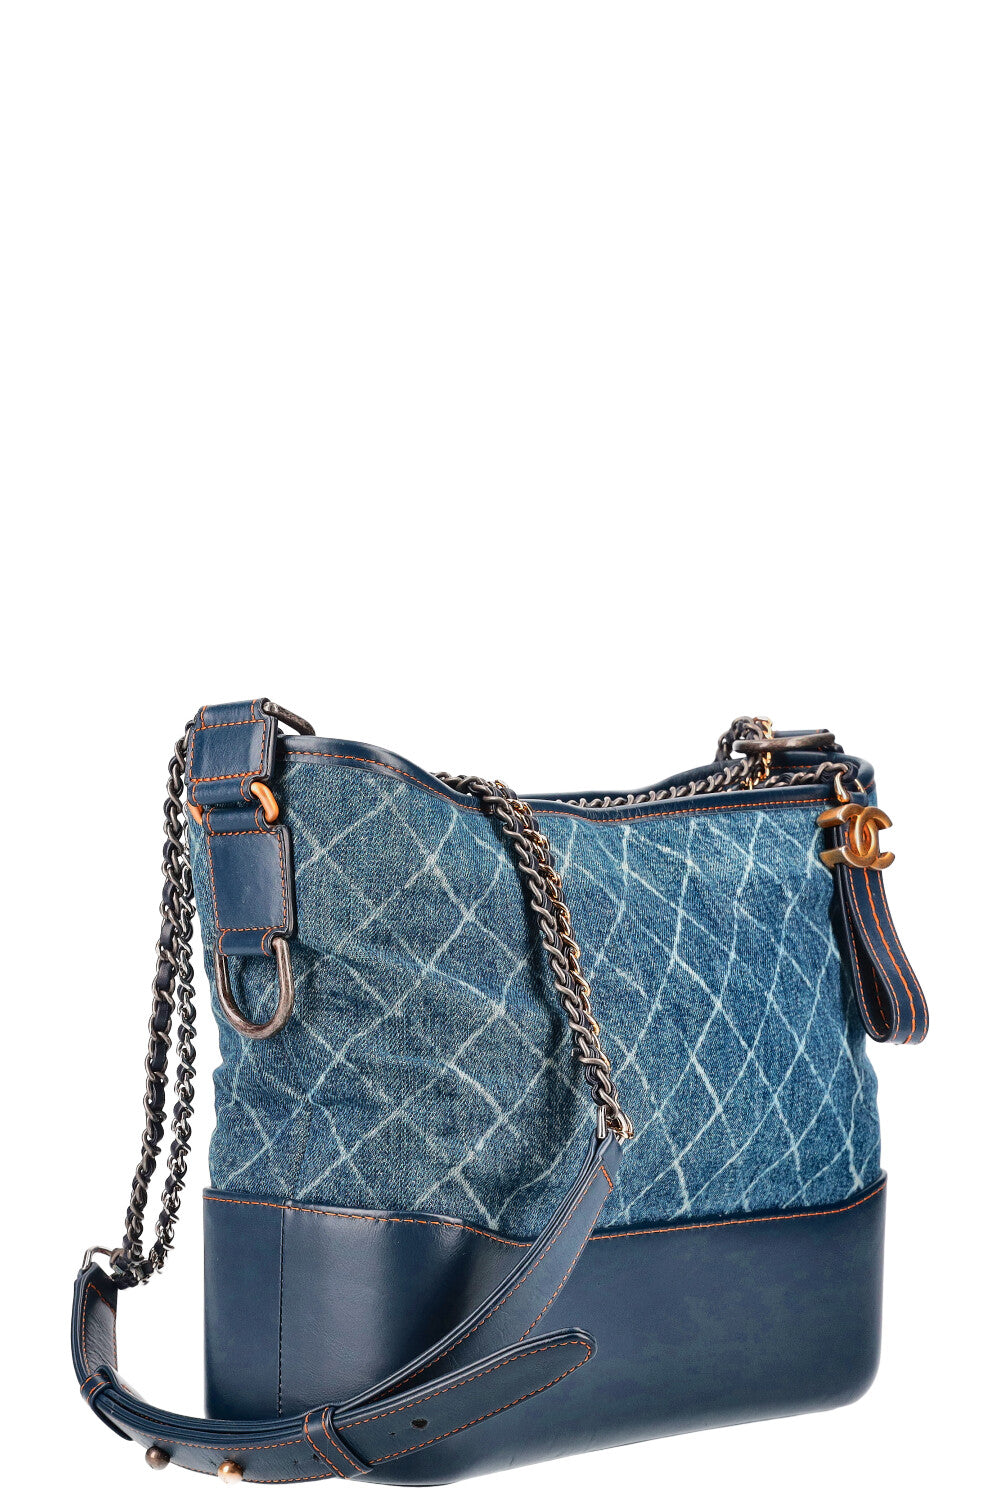 Túi xách Chanel màu xanh logo chất lượng cao